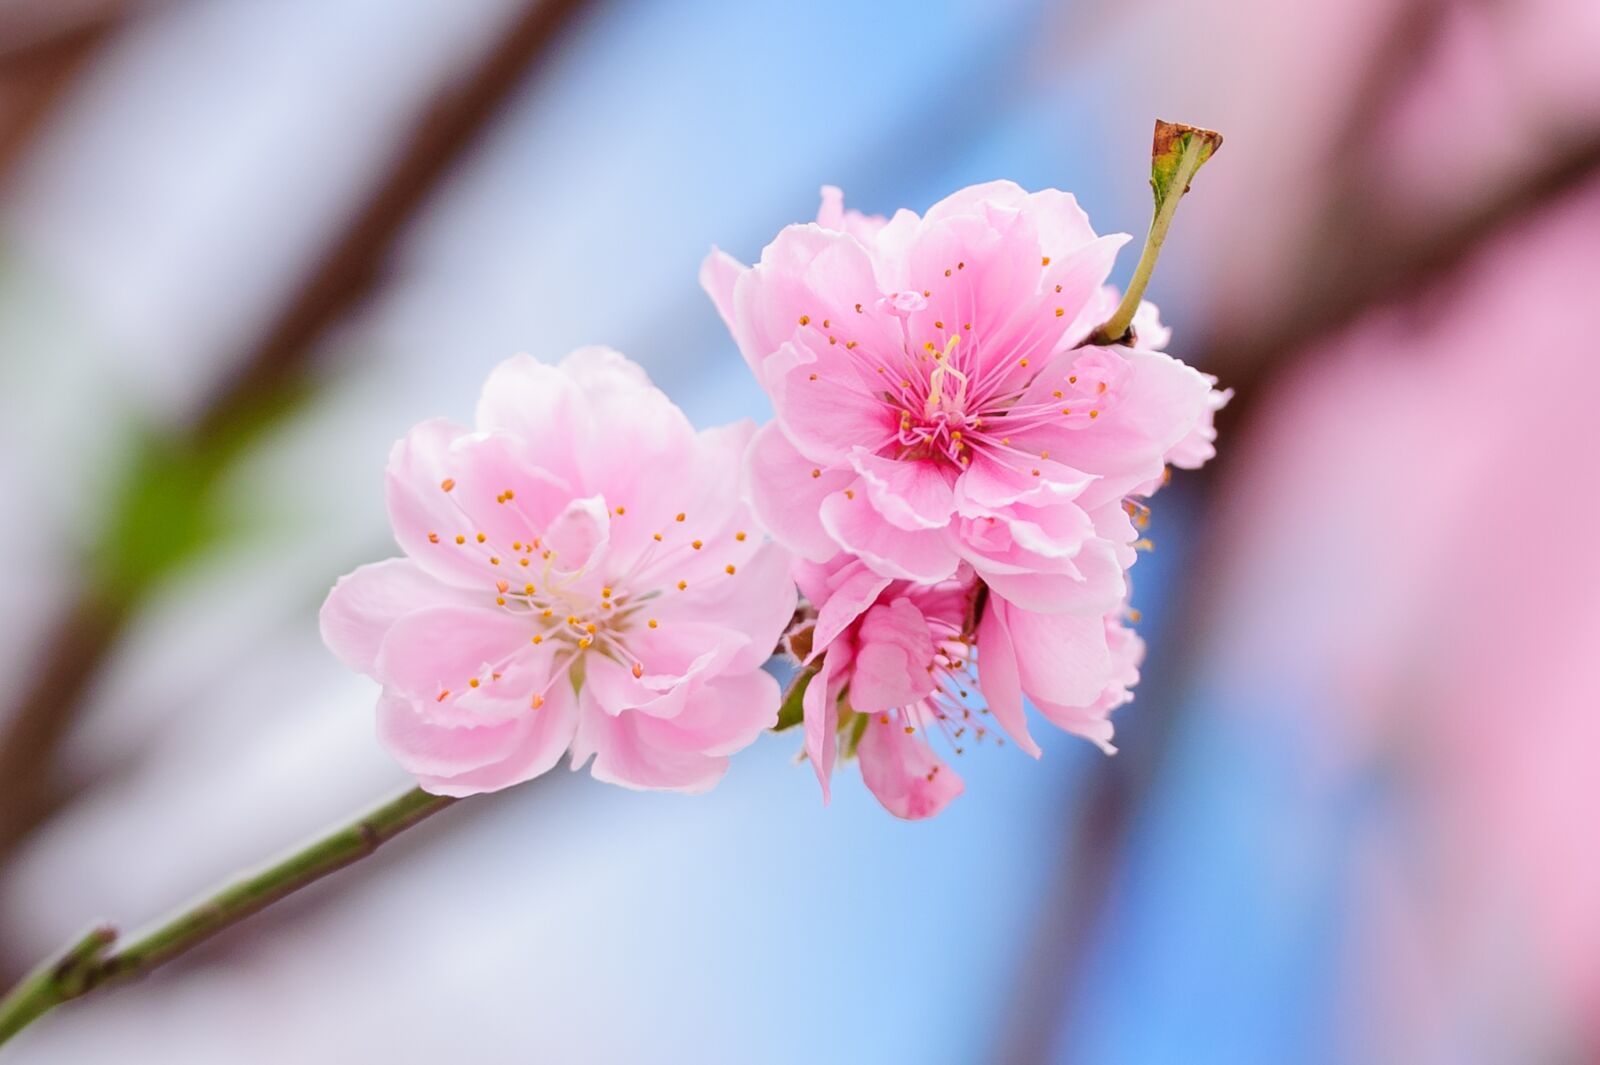 Nikon D700 sample photo. Peach, peach flower, flower photography